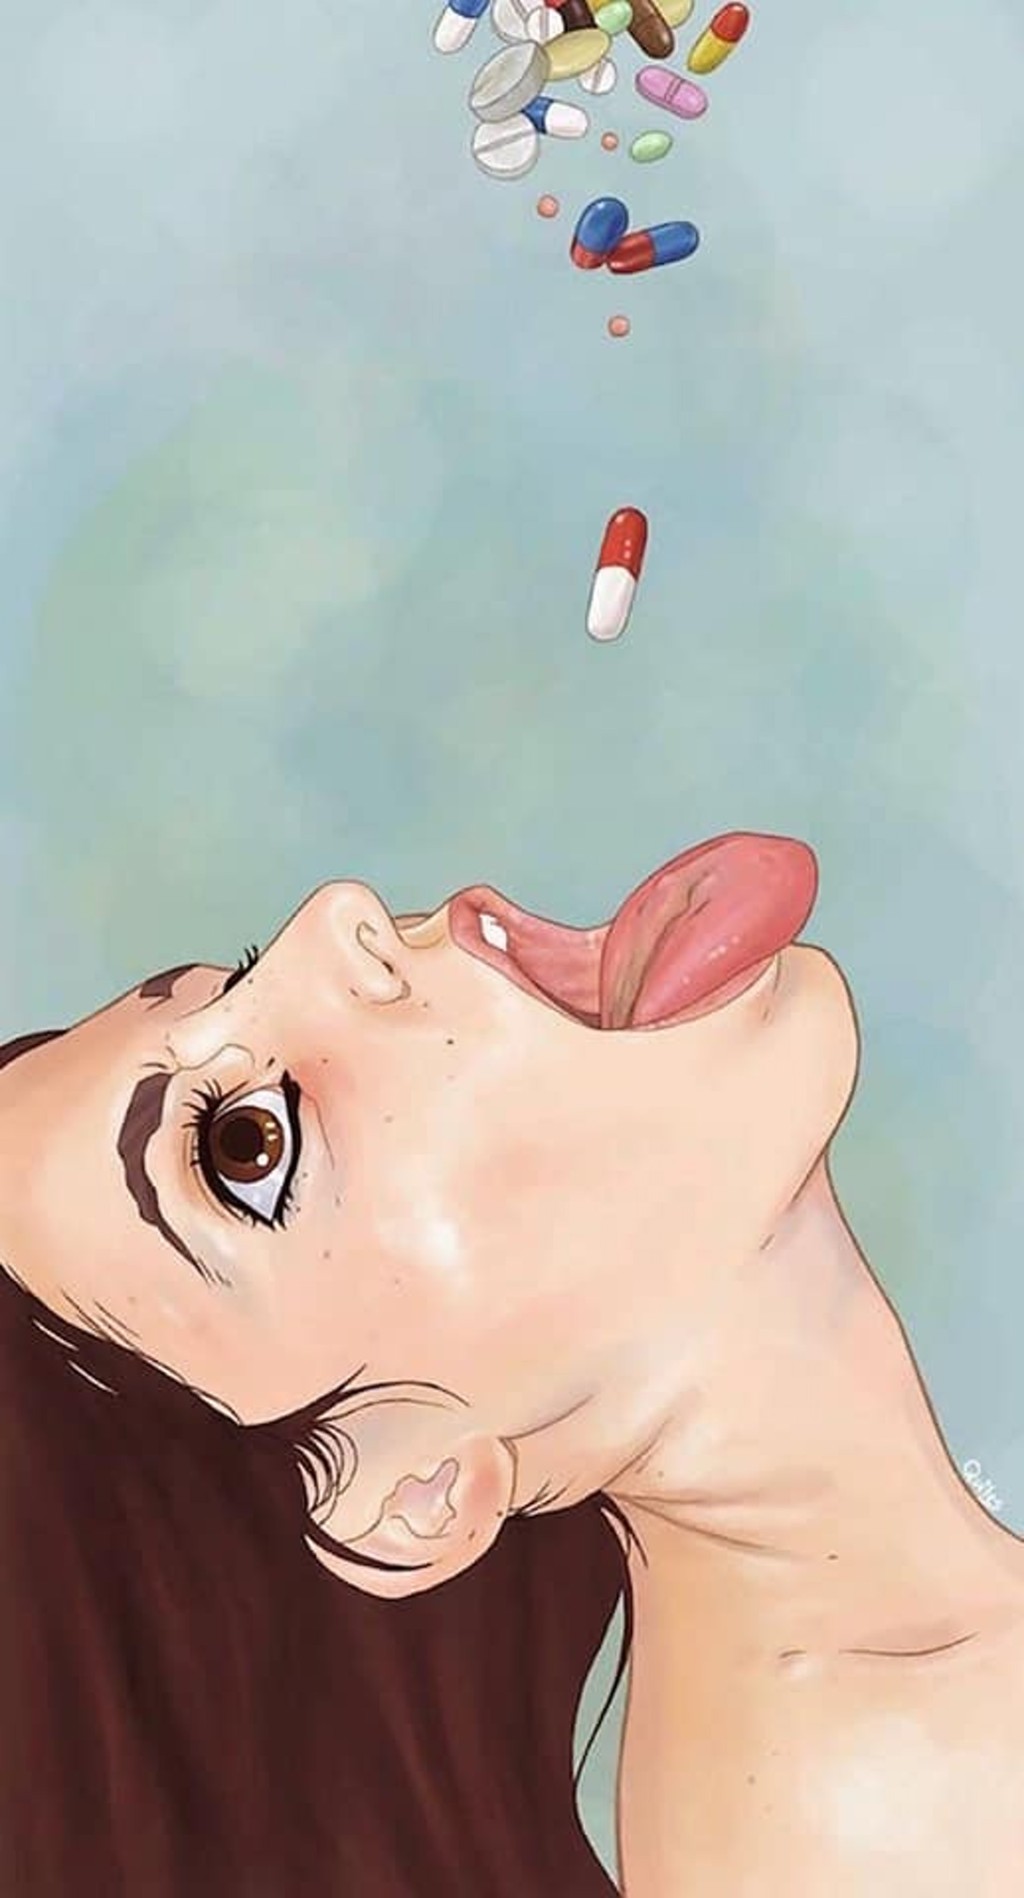 女子抬頭張口一張準備掉大量掉下藥丸的圖畫被放在留言區。fb